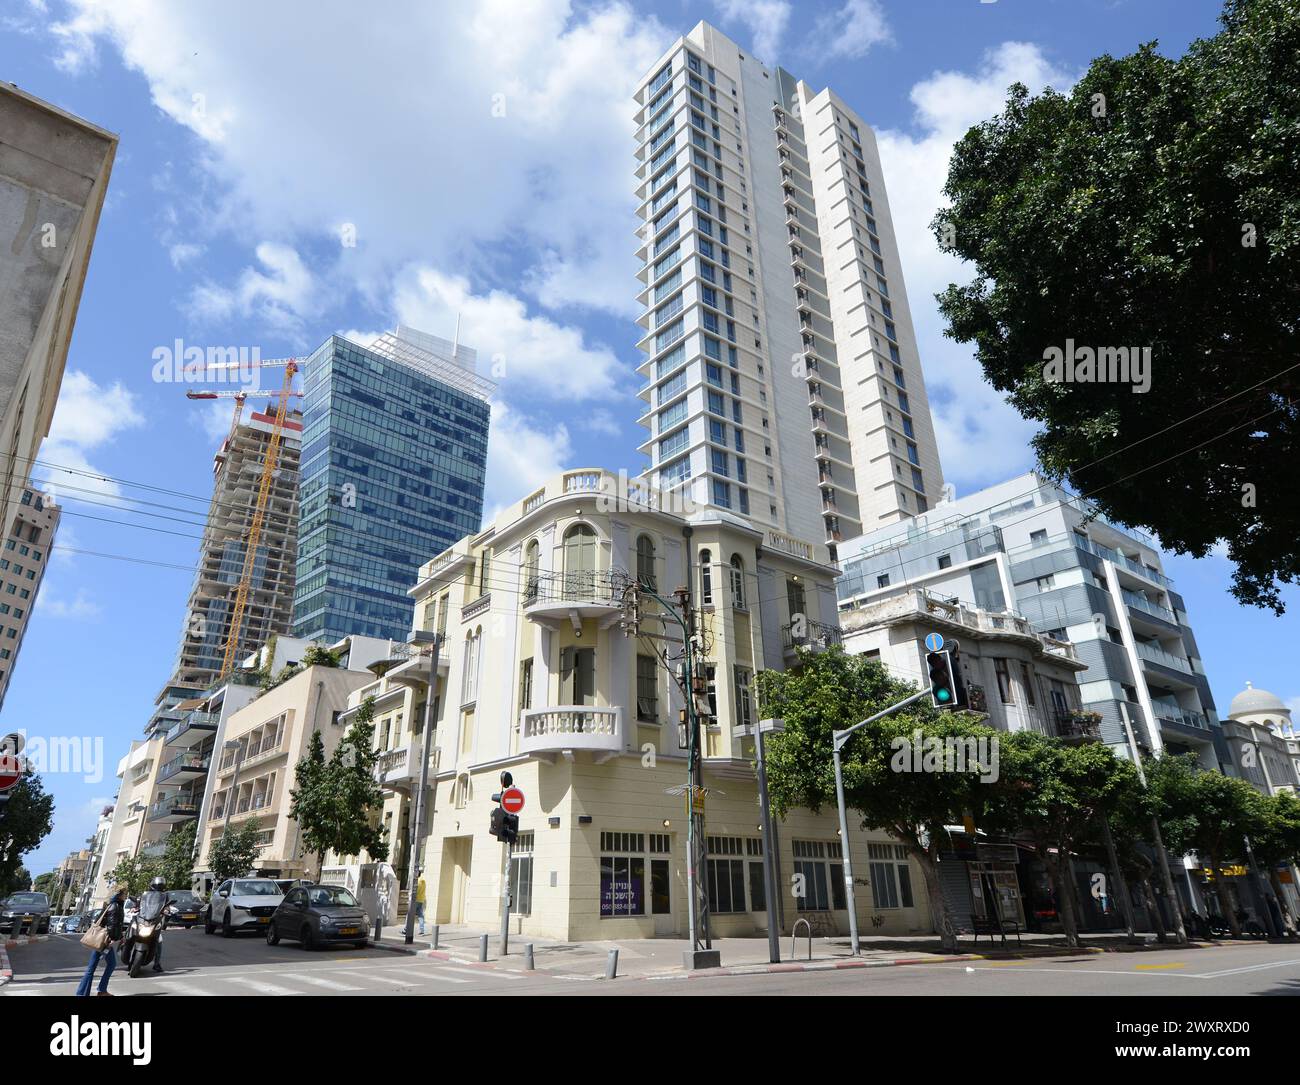 Edifici moderni di vecchi edifici rinnovati all'angolo tra Allenby St e Rothschild Boulevard a Tel-Aviv, Israele. Foto Stock